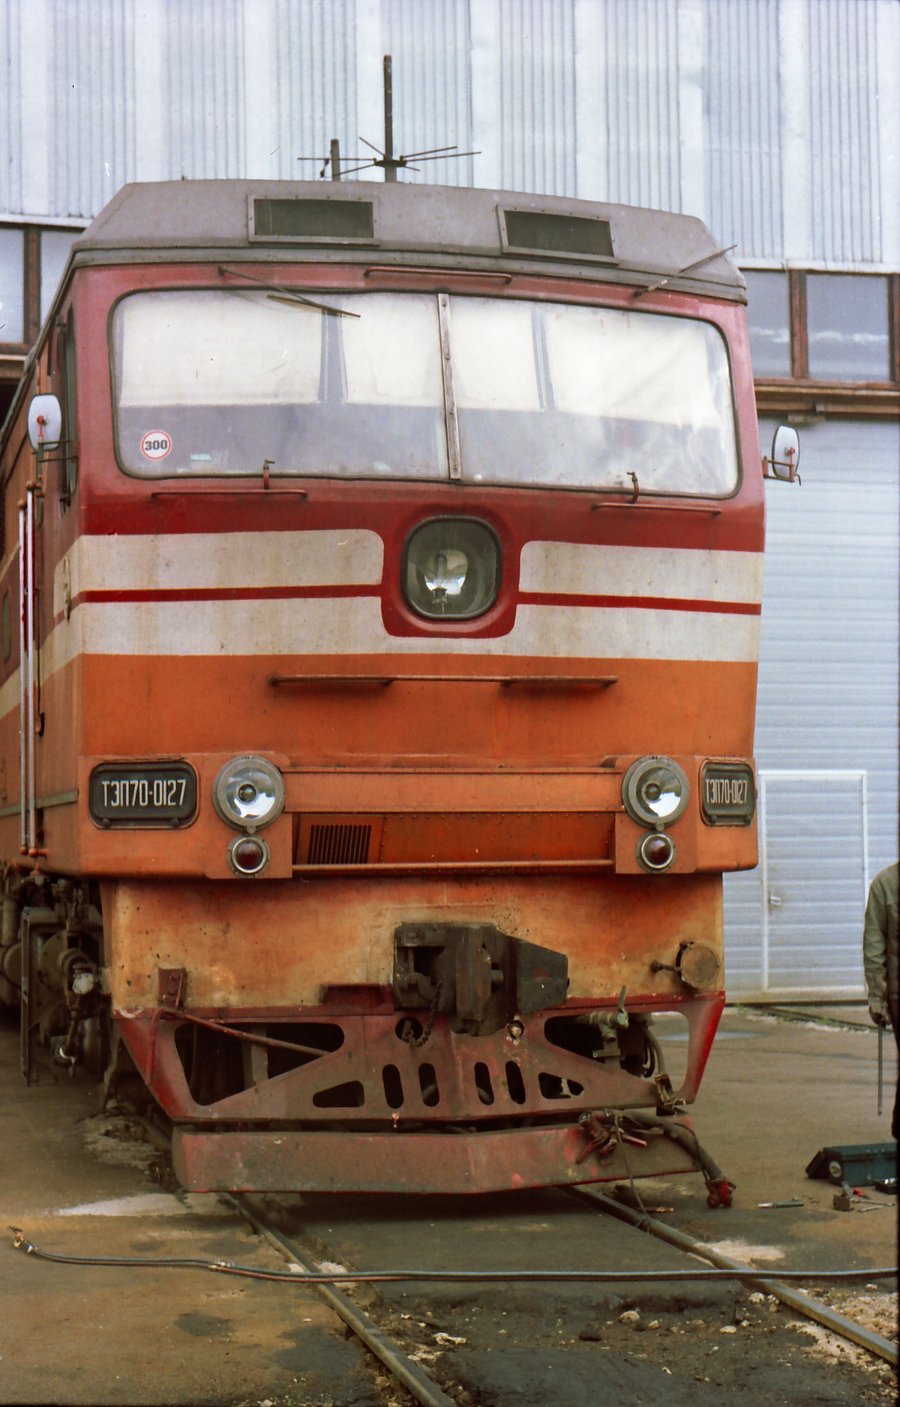 TEP70-0127 (Russian loco)
30.03.2003
Tallinn-Väike depot
